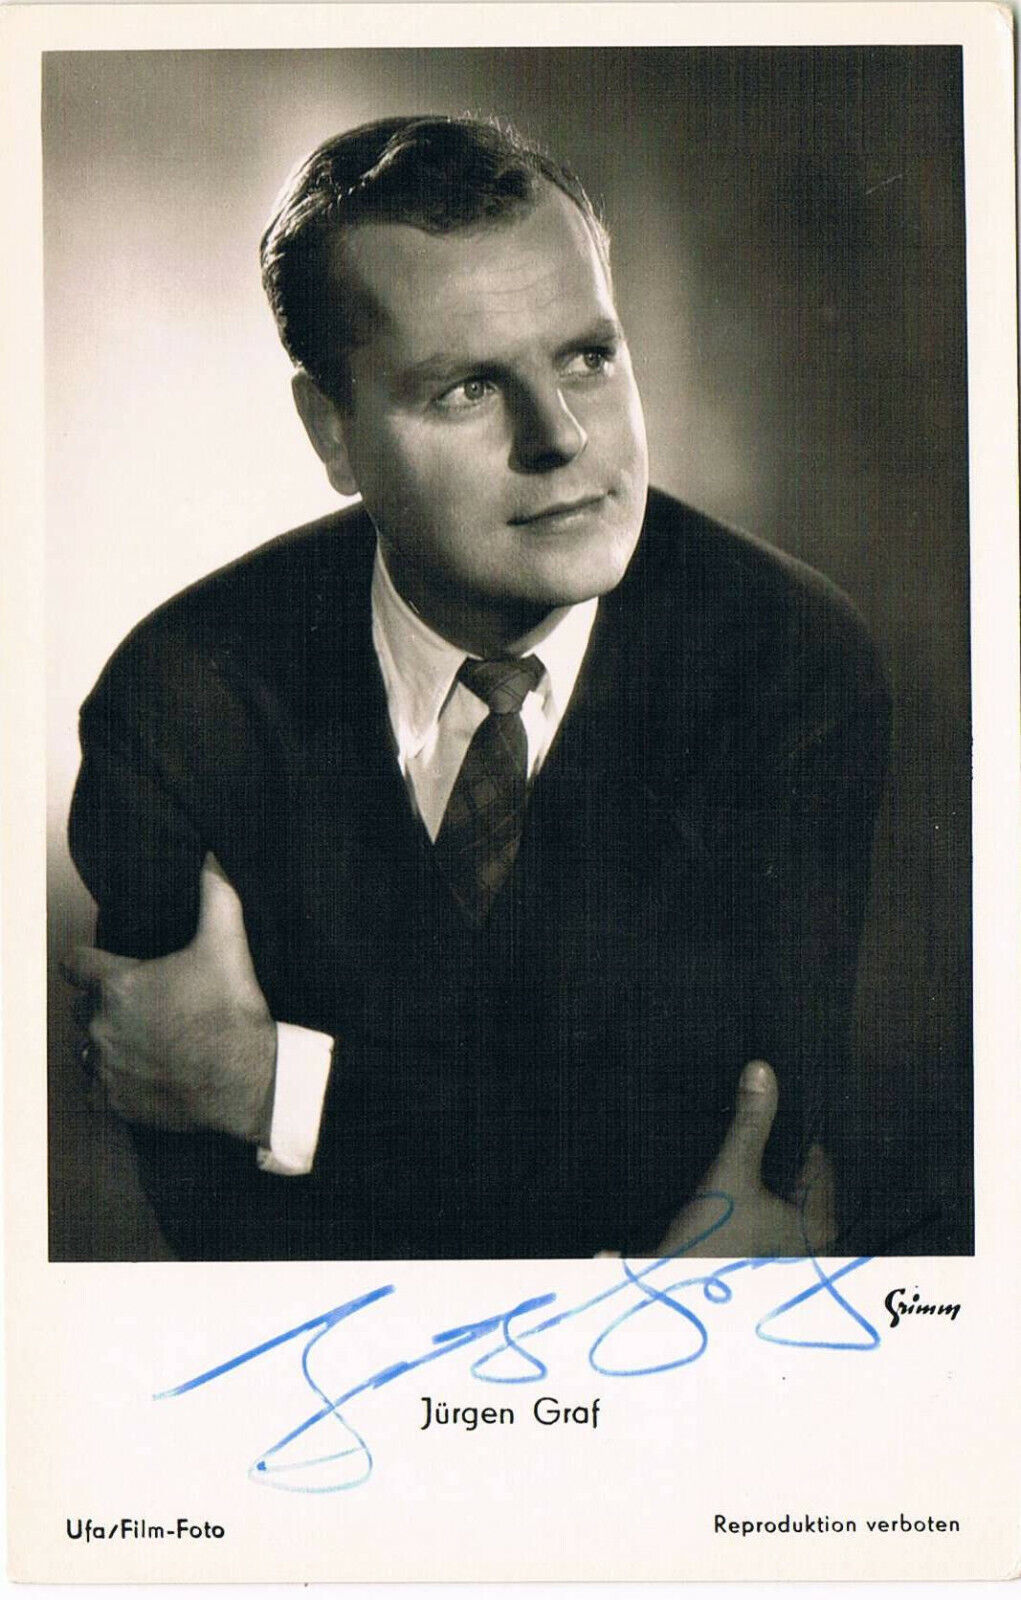 Jürgen Graf 1927-2007 autograph signed postcard Photo Poster painting 3.5x5.5